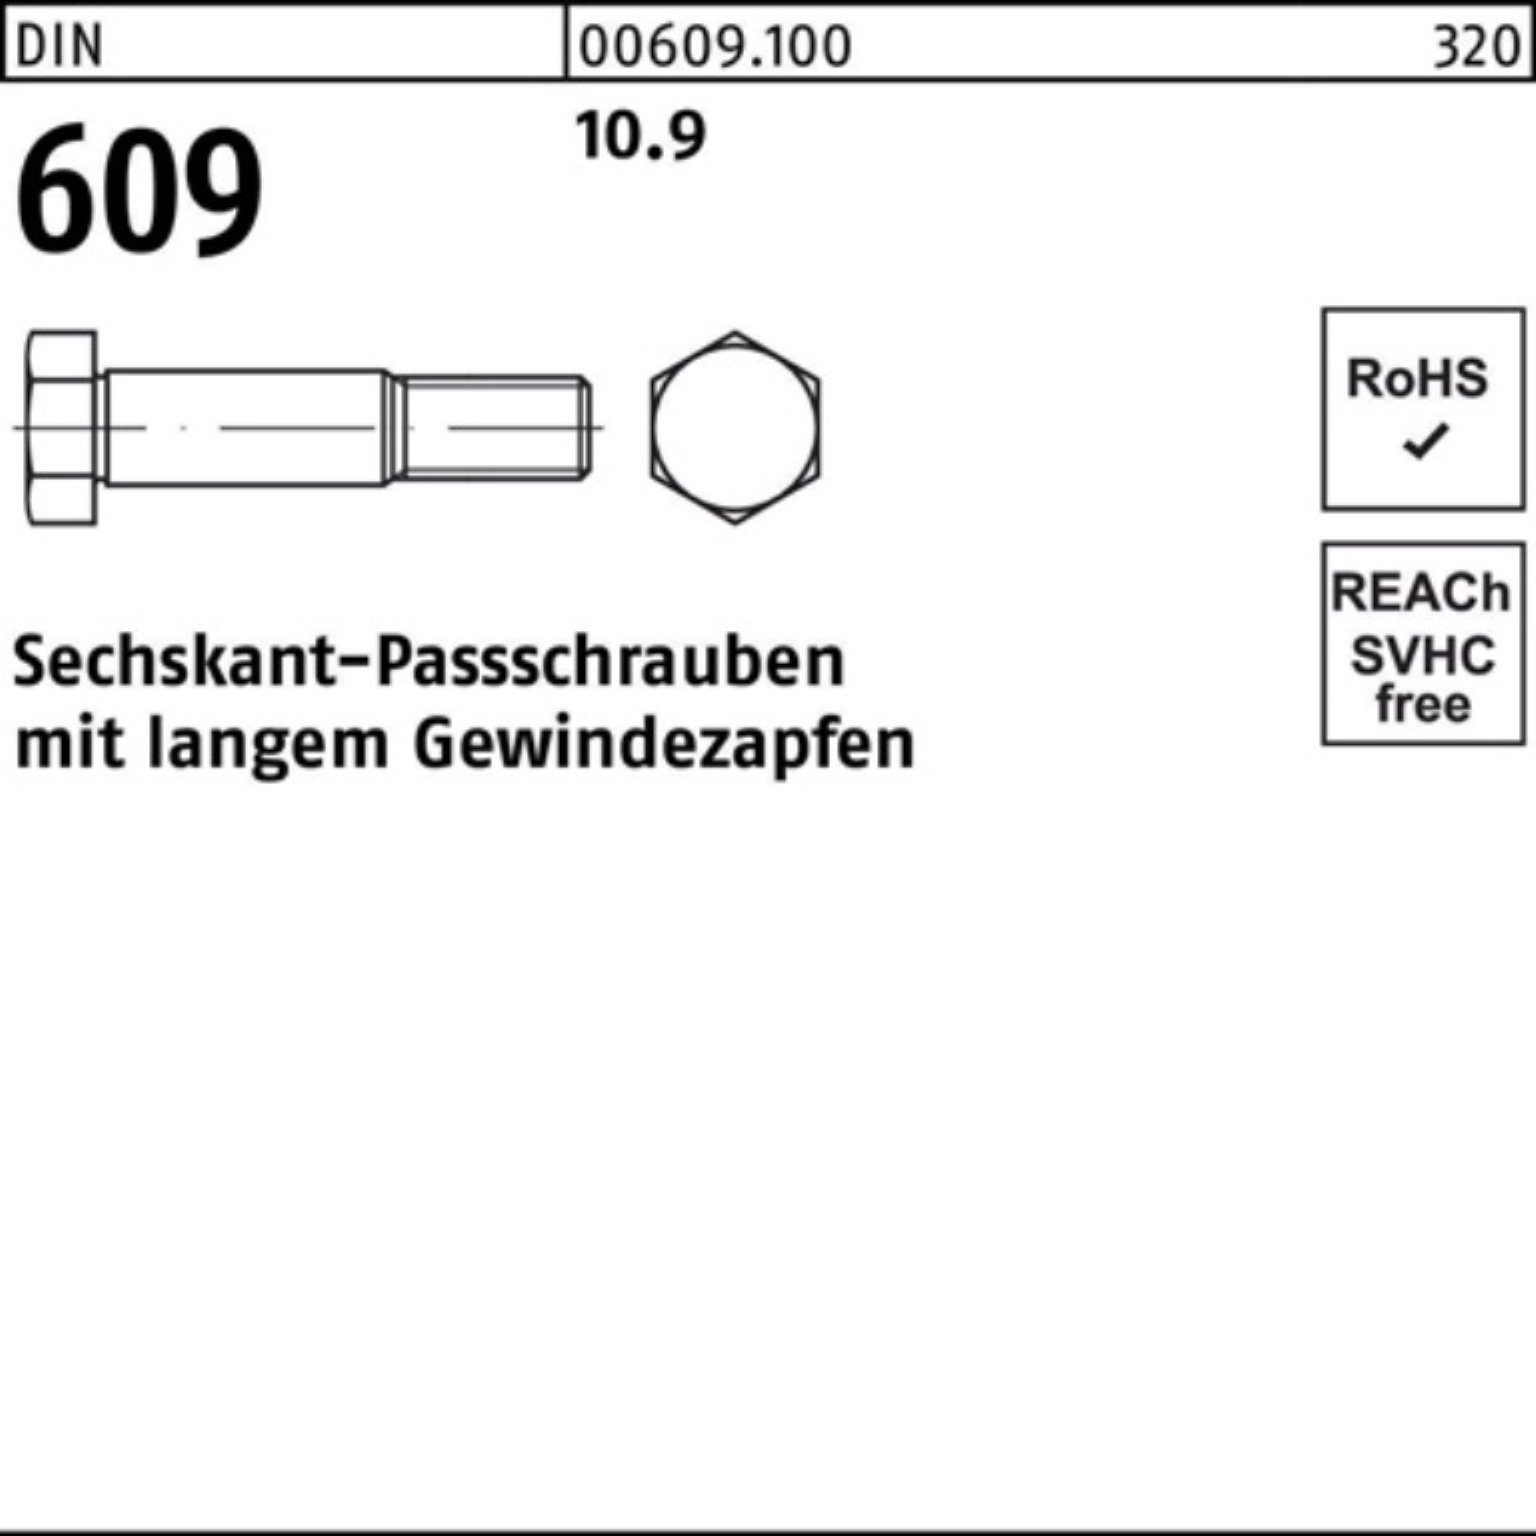 Reyher Schraube 100er Pack M10x 609 DIN langem 30 Sechskantpassschraube Gewindezapfen